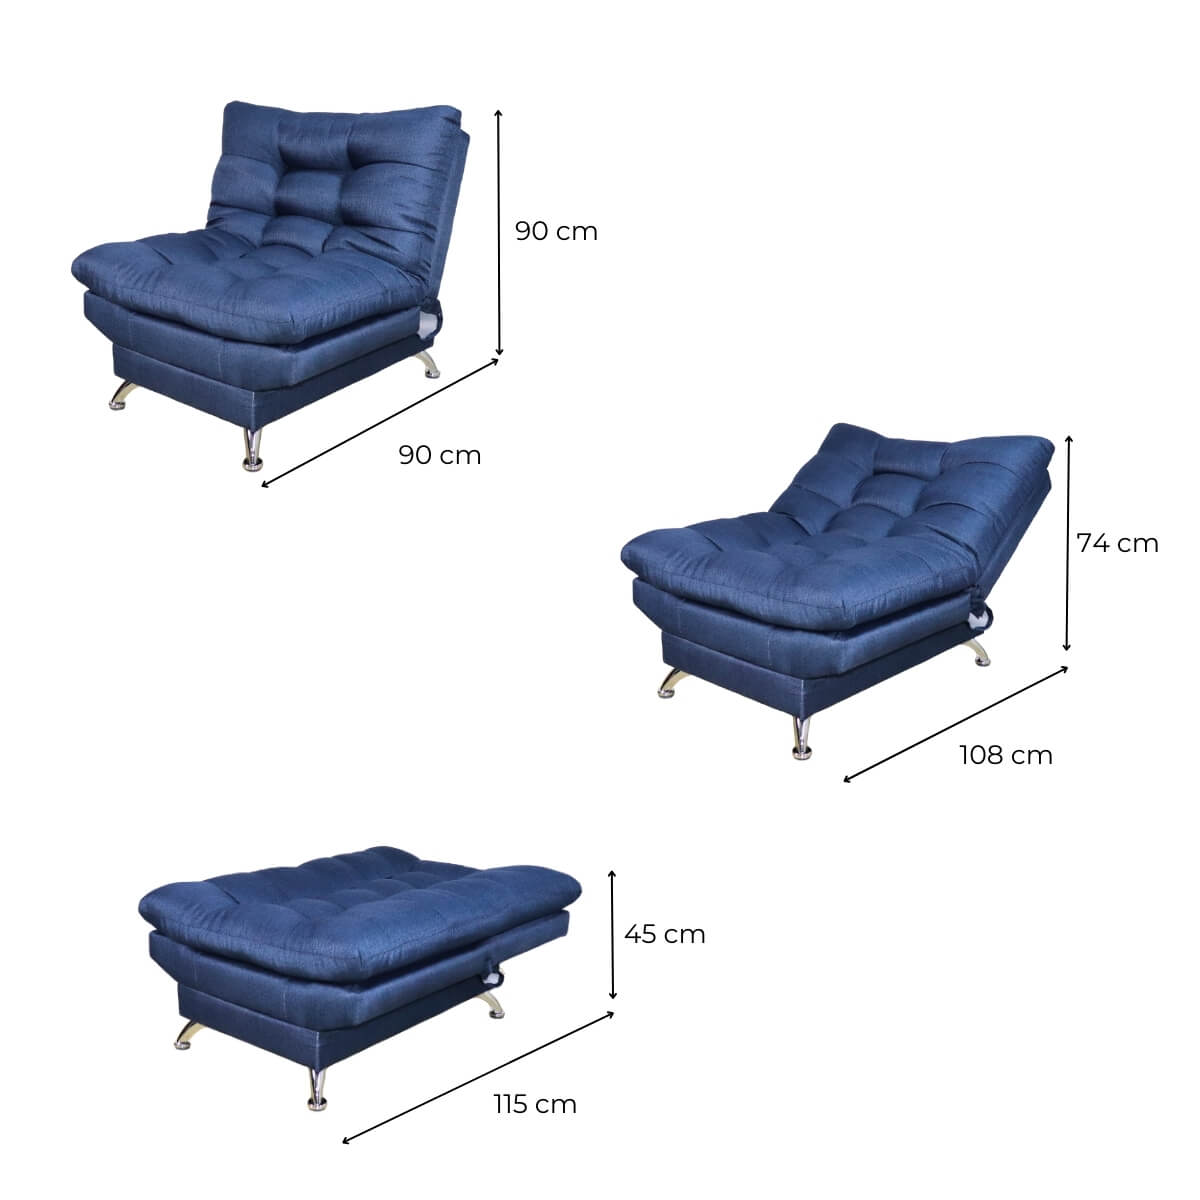 Medidas sillón ocasional moderno azul cerca de mi #color_marino